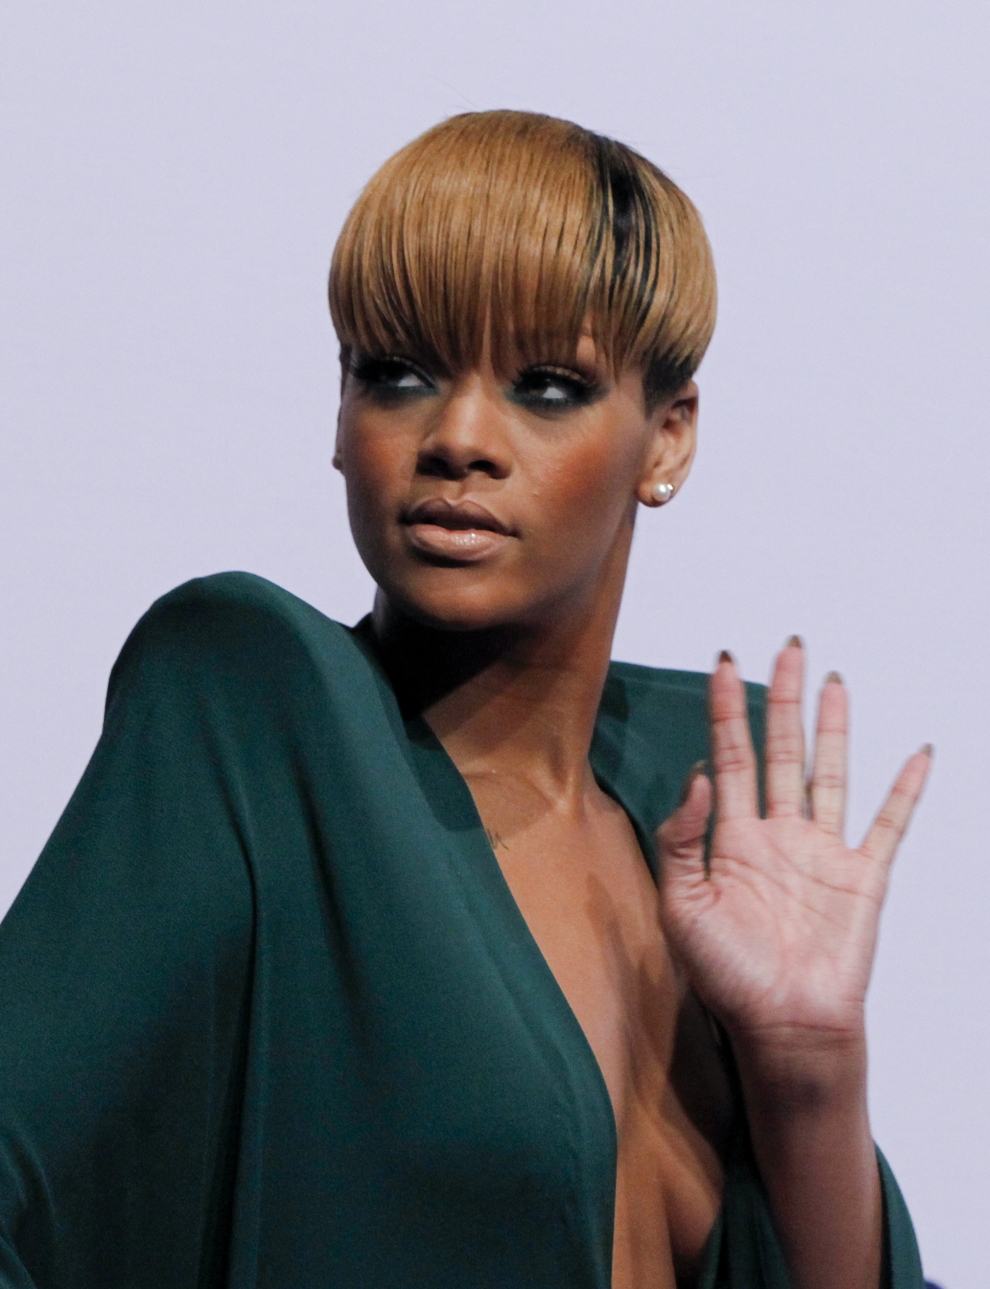 Rihanna jeszcze w tym miesiącu z nową płytą?